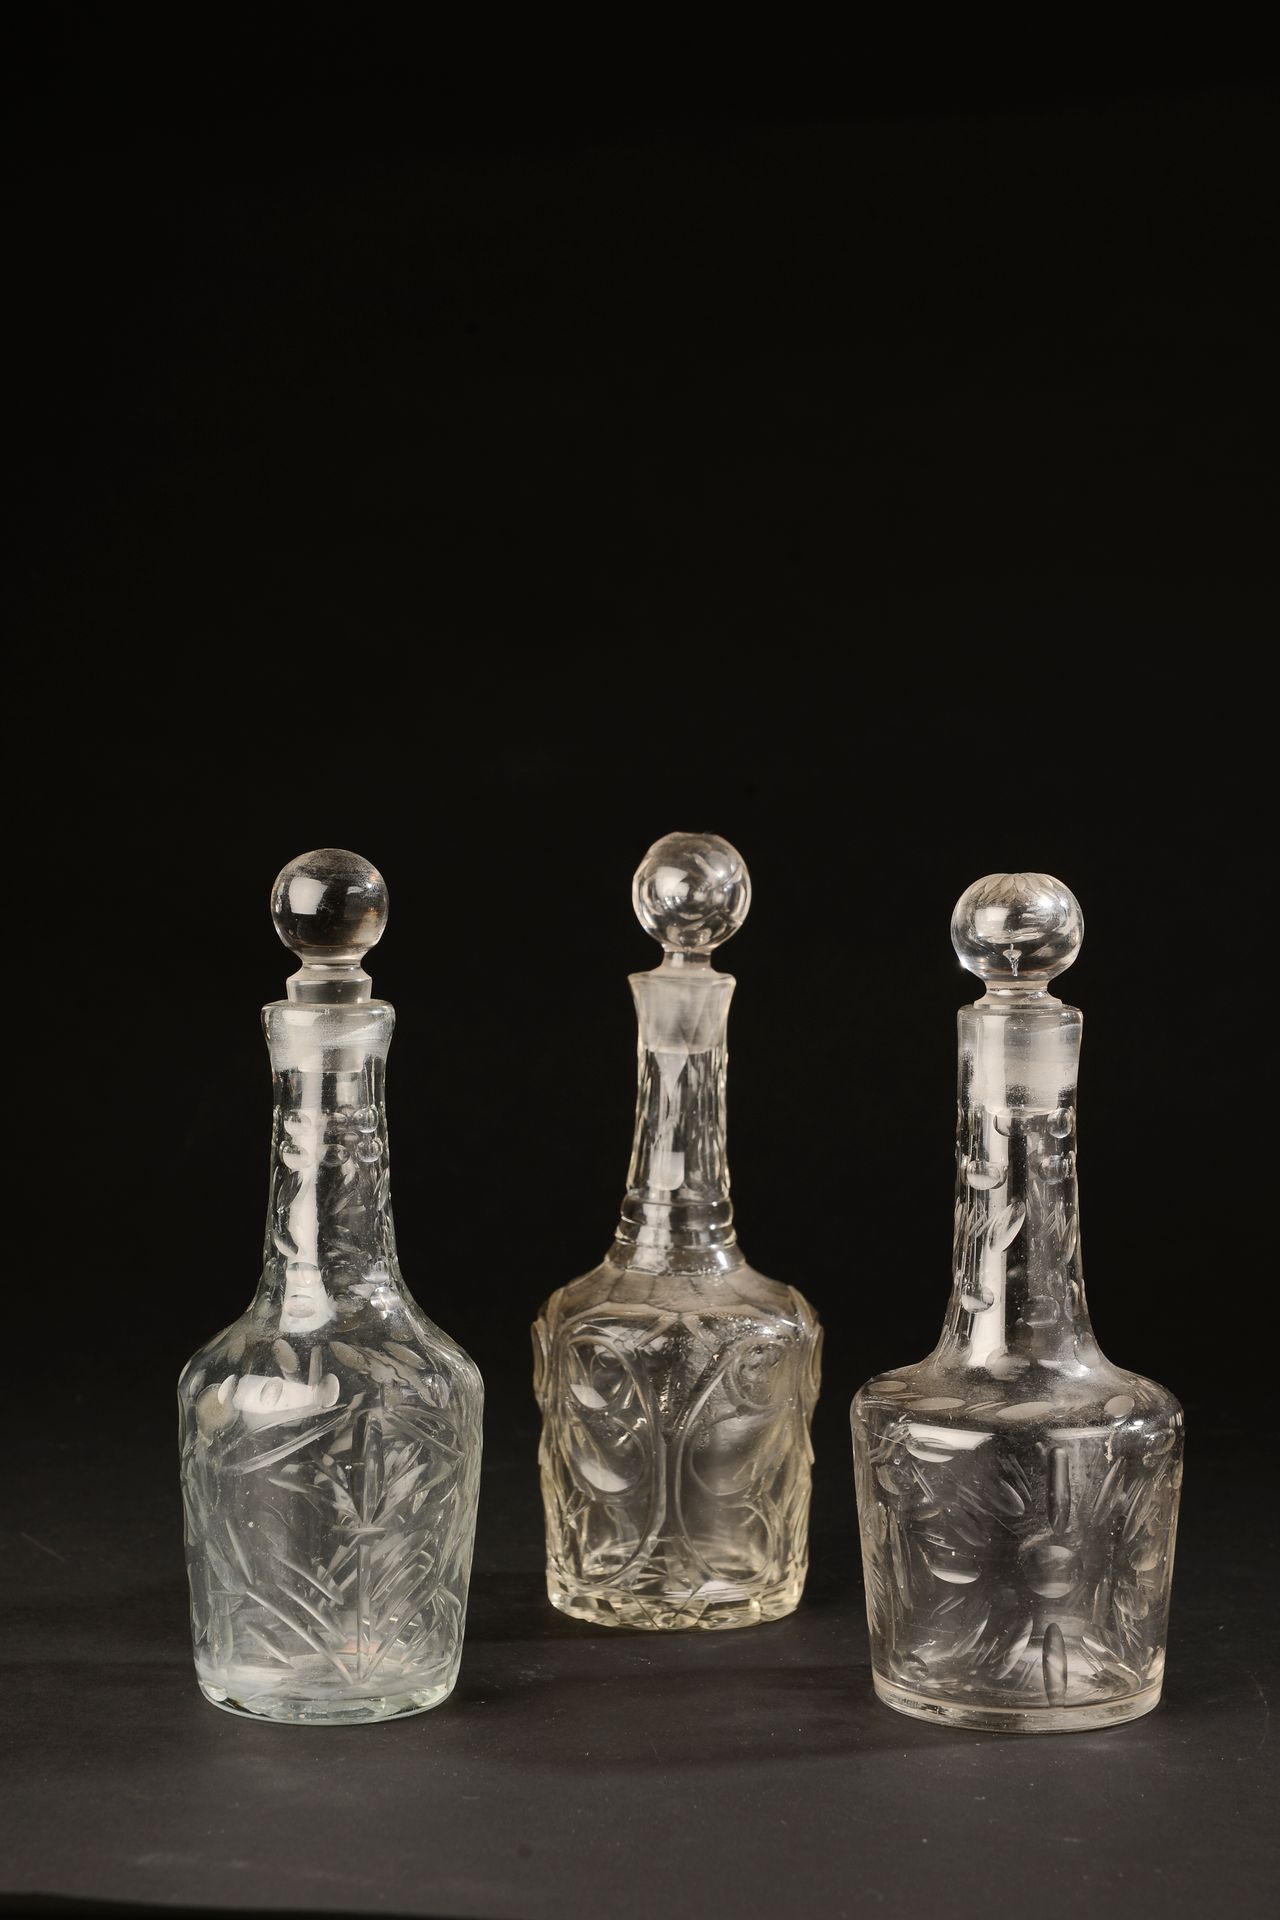 Null 两个吹制的玻璃瓶，下面有镀金的圆角（一个瓶塞被加上，镀金的地方有磨损）。

18世纪。

高度：20厘米。20厘米高

另一个是19世纪的作品。